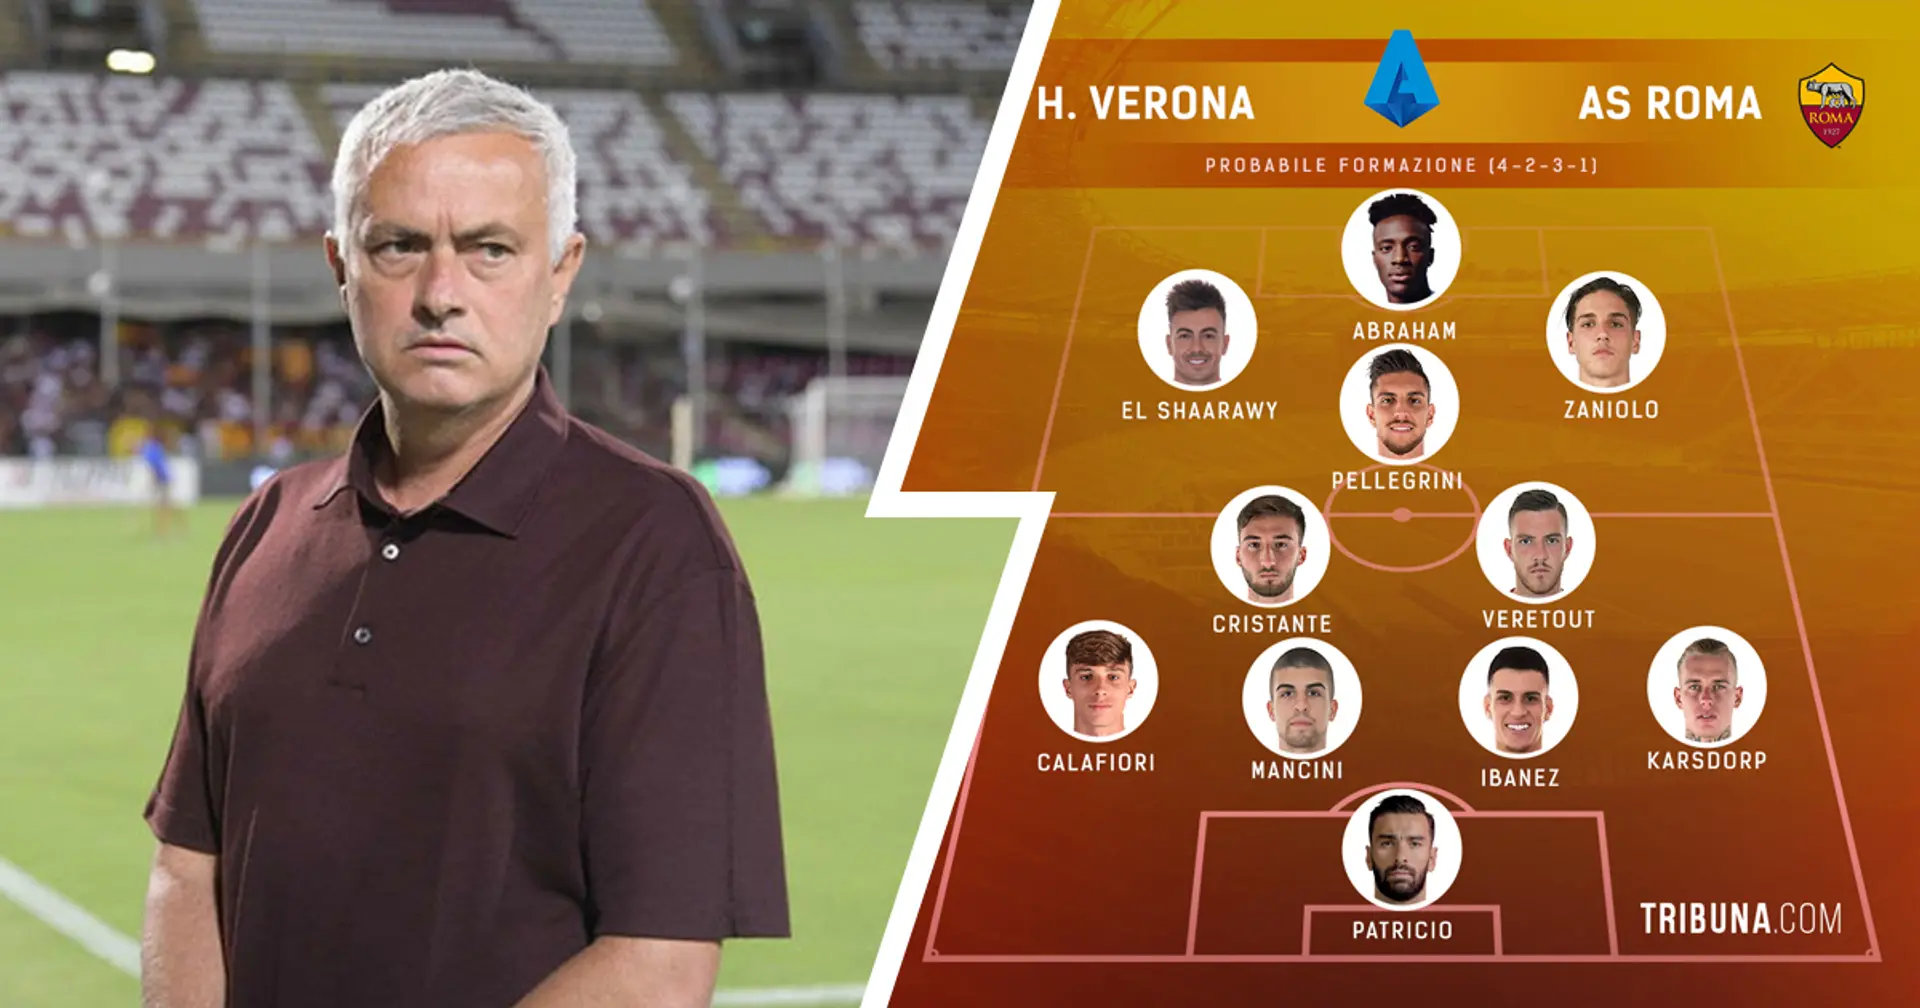 Verona vs Roma, probabili formazioni e ultime notizie: Mourinho non pensa al turnover dopo le recenti fatiche